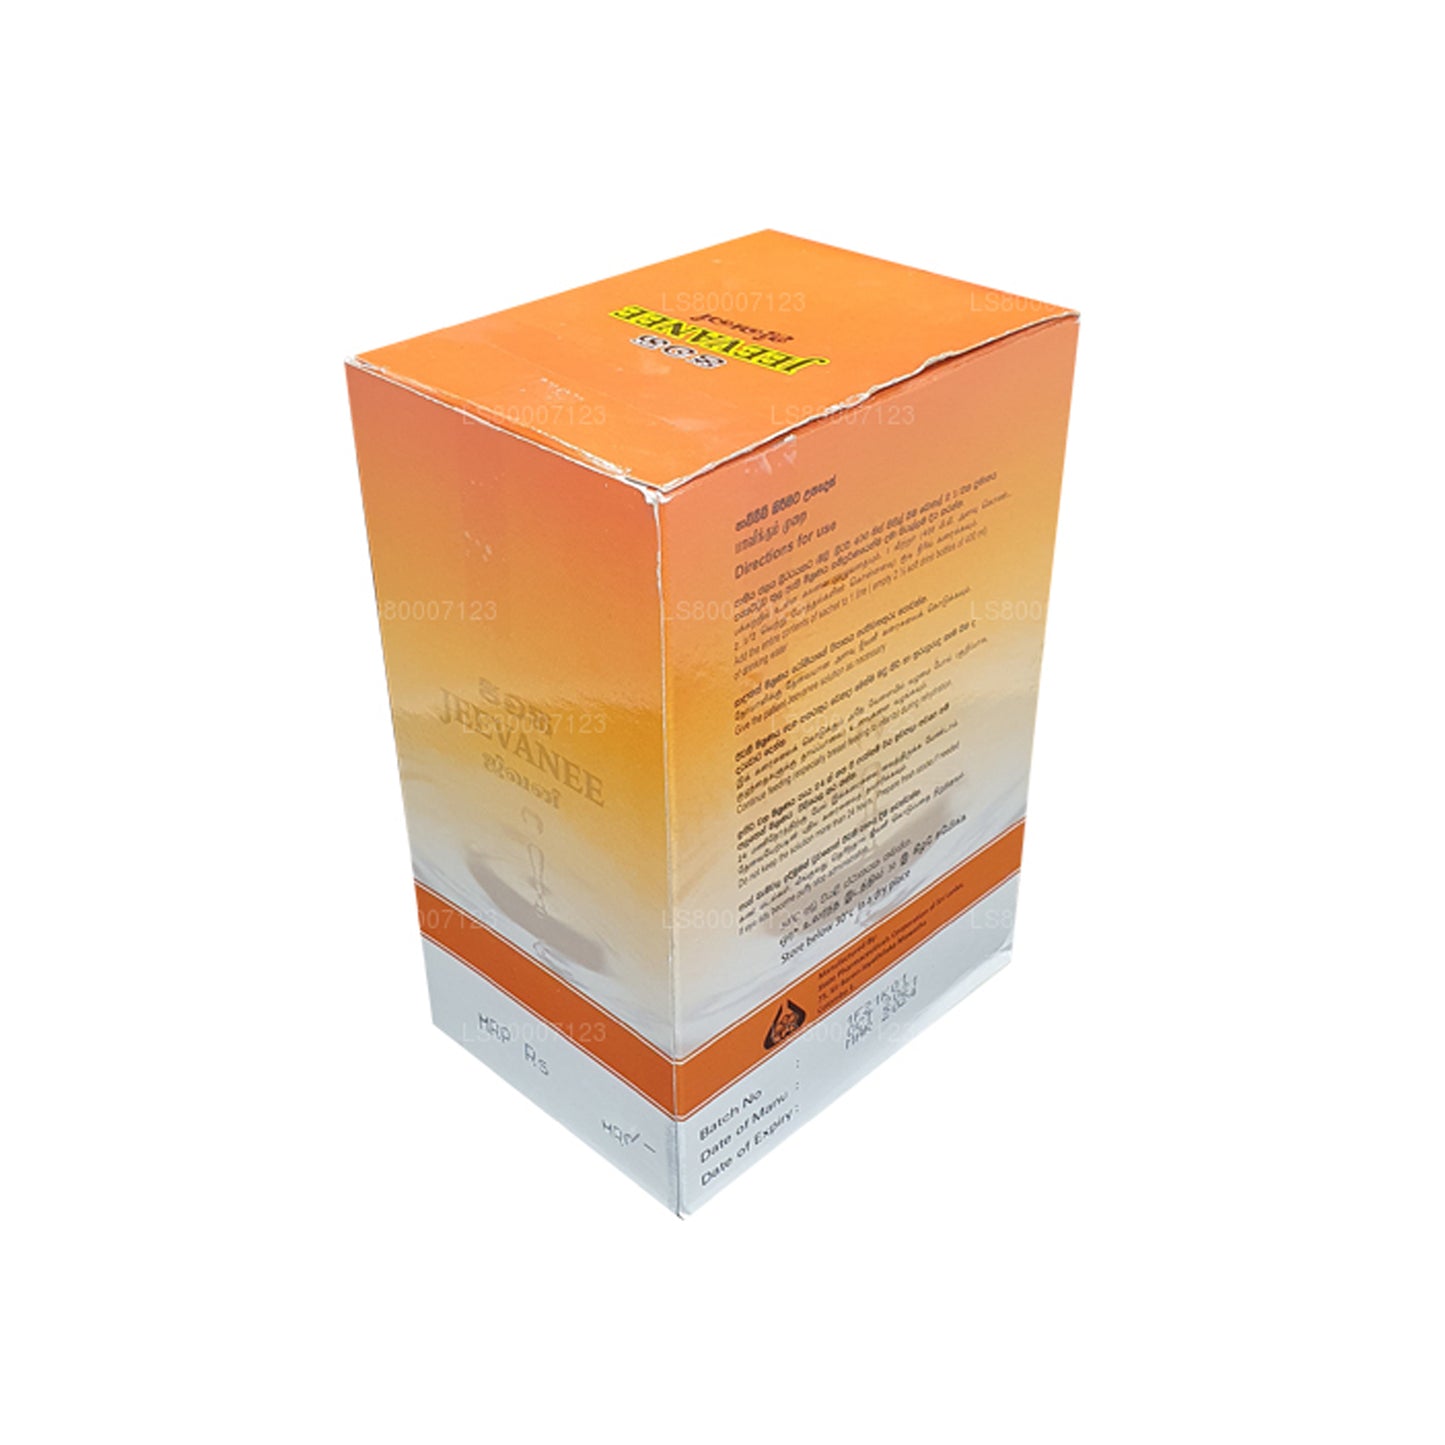 Jeevanee orale rehydratatiezouten met sinaasappelsmaak (25 zakjes)